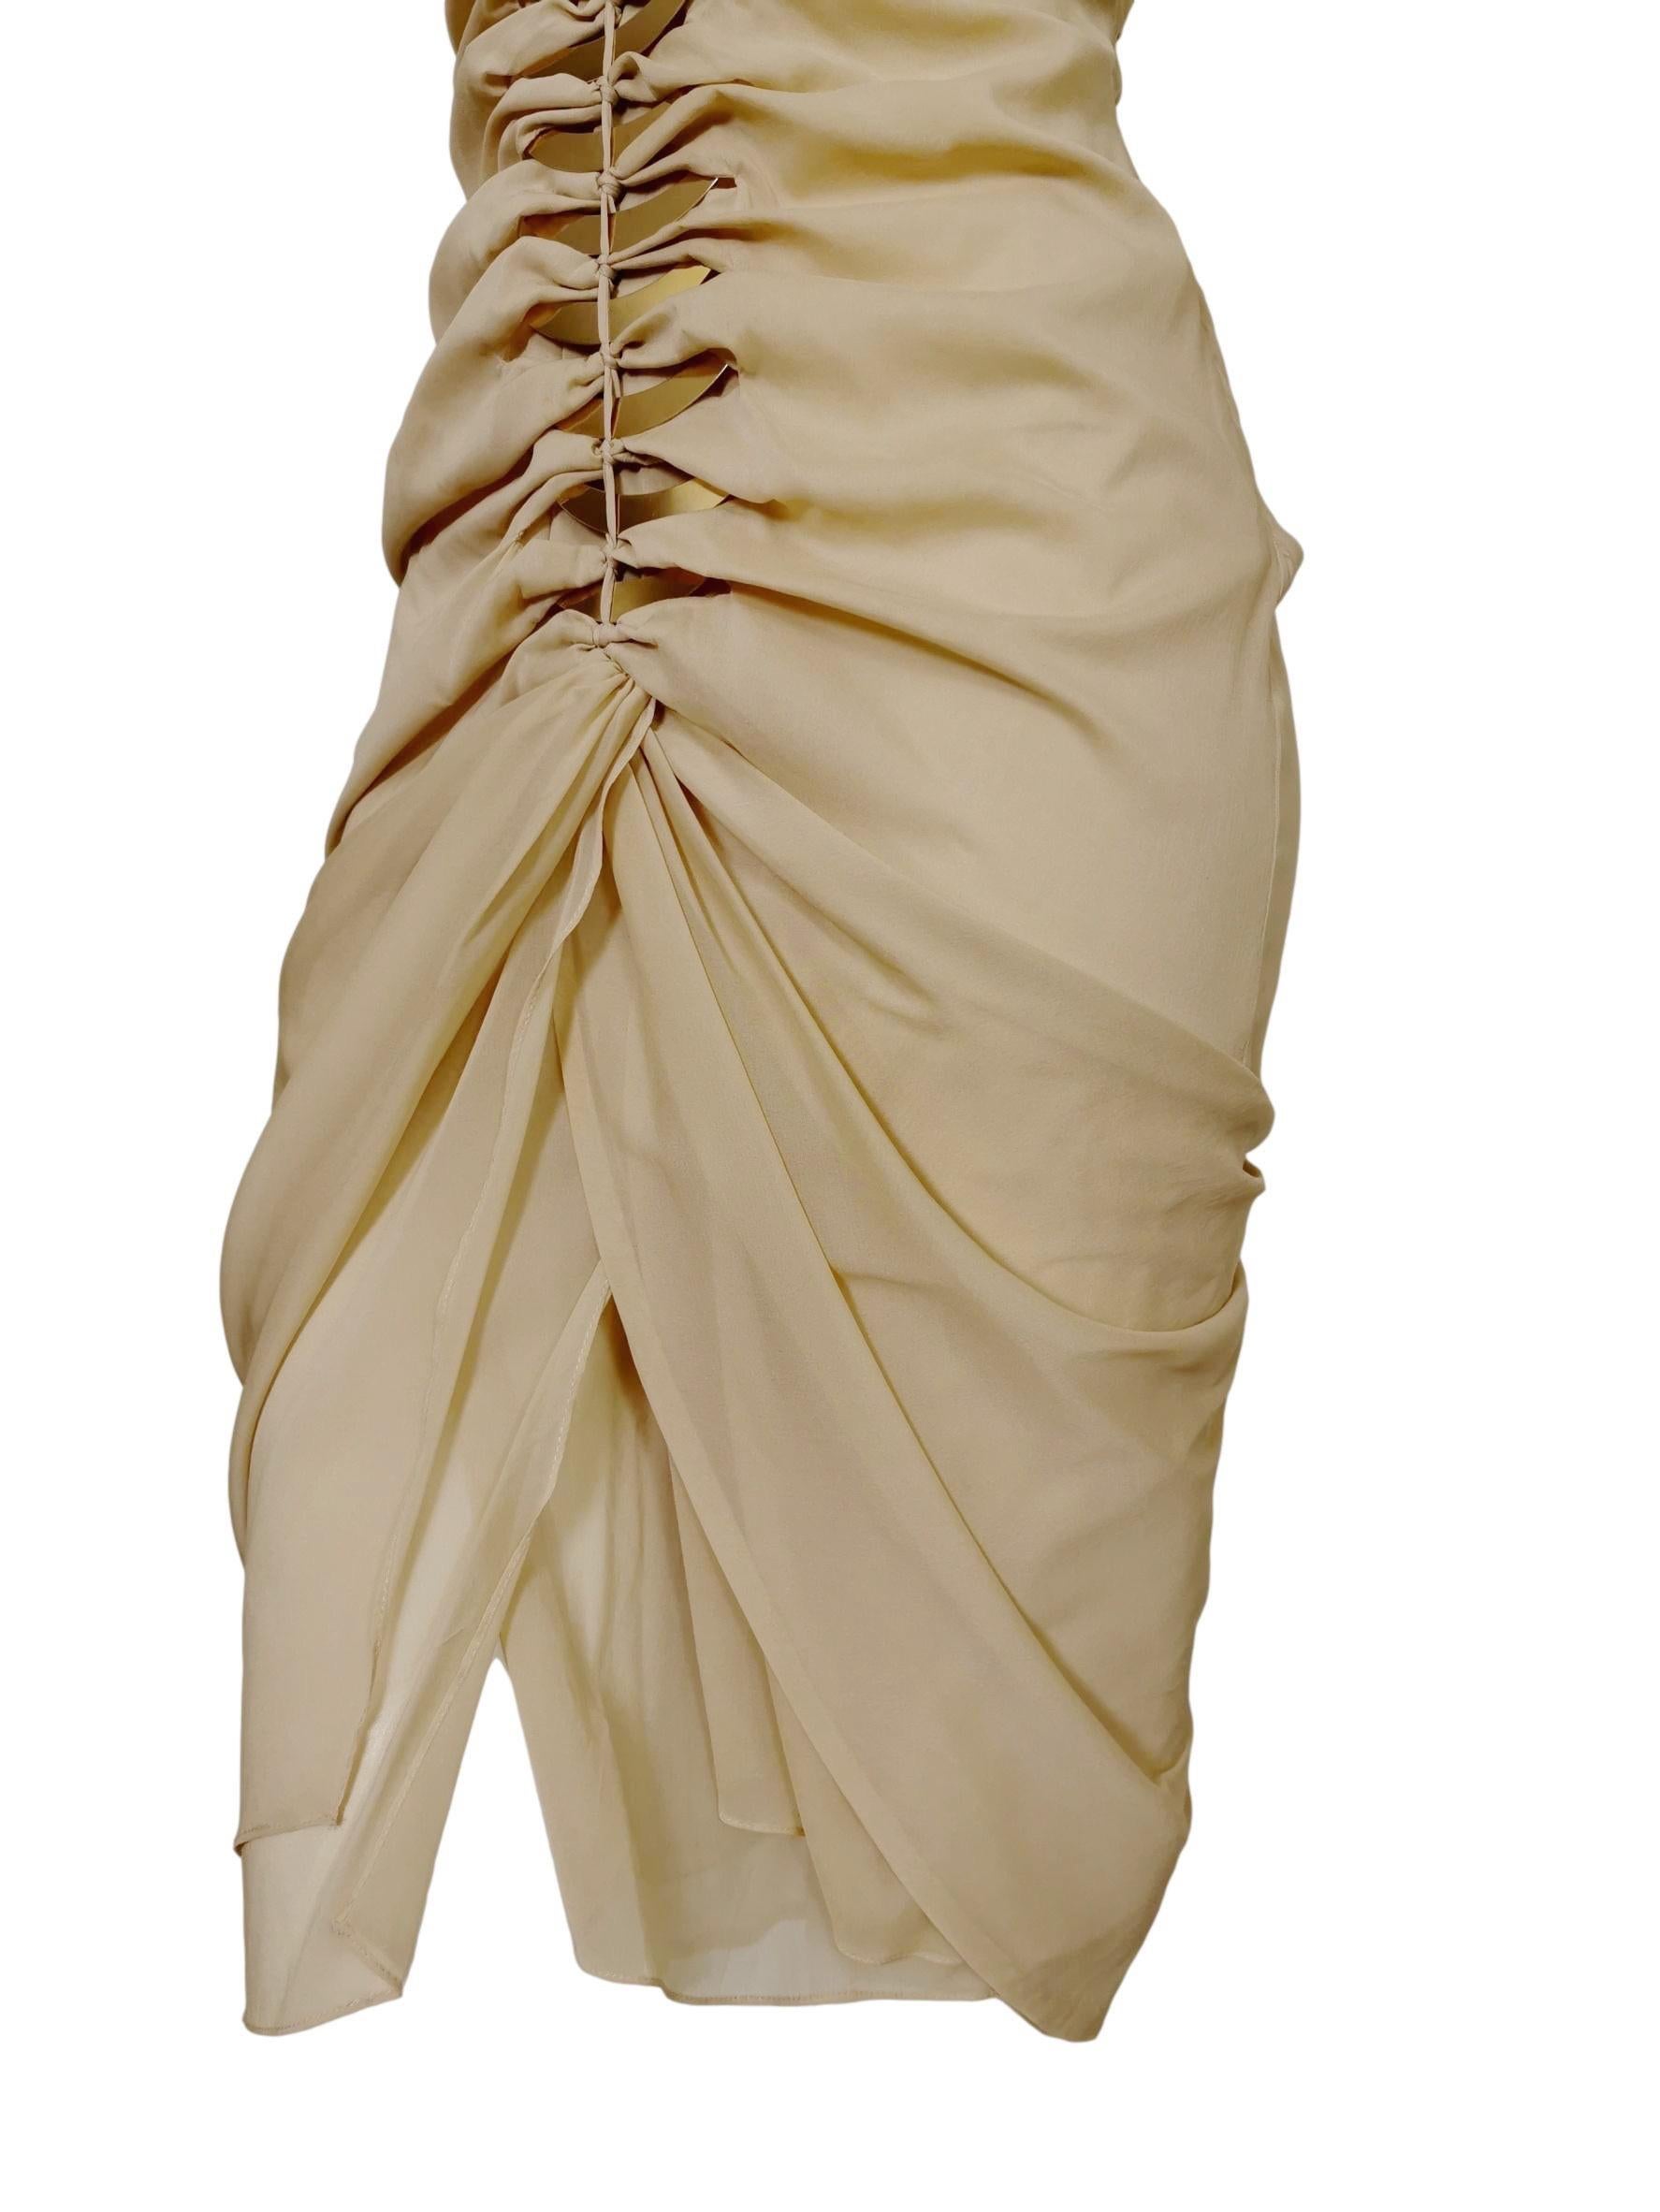 Brown Gucci Tom Ford 2004 Draped Silk Dress